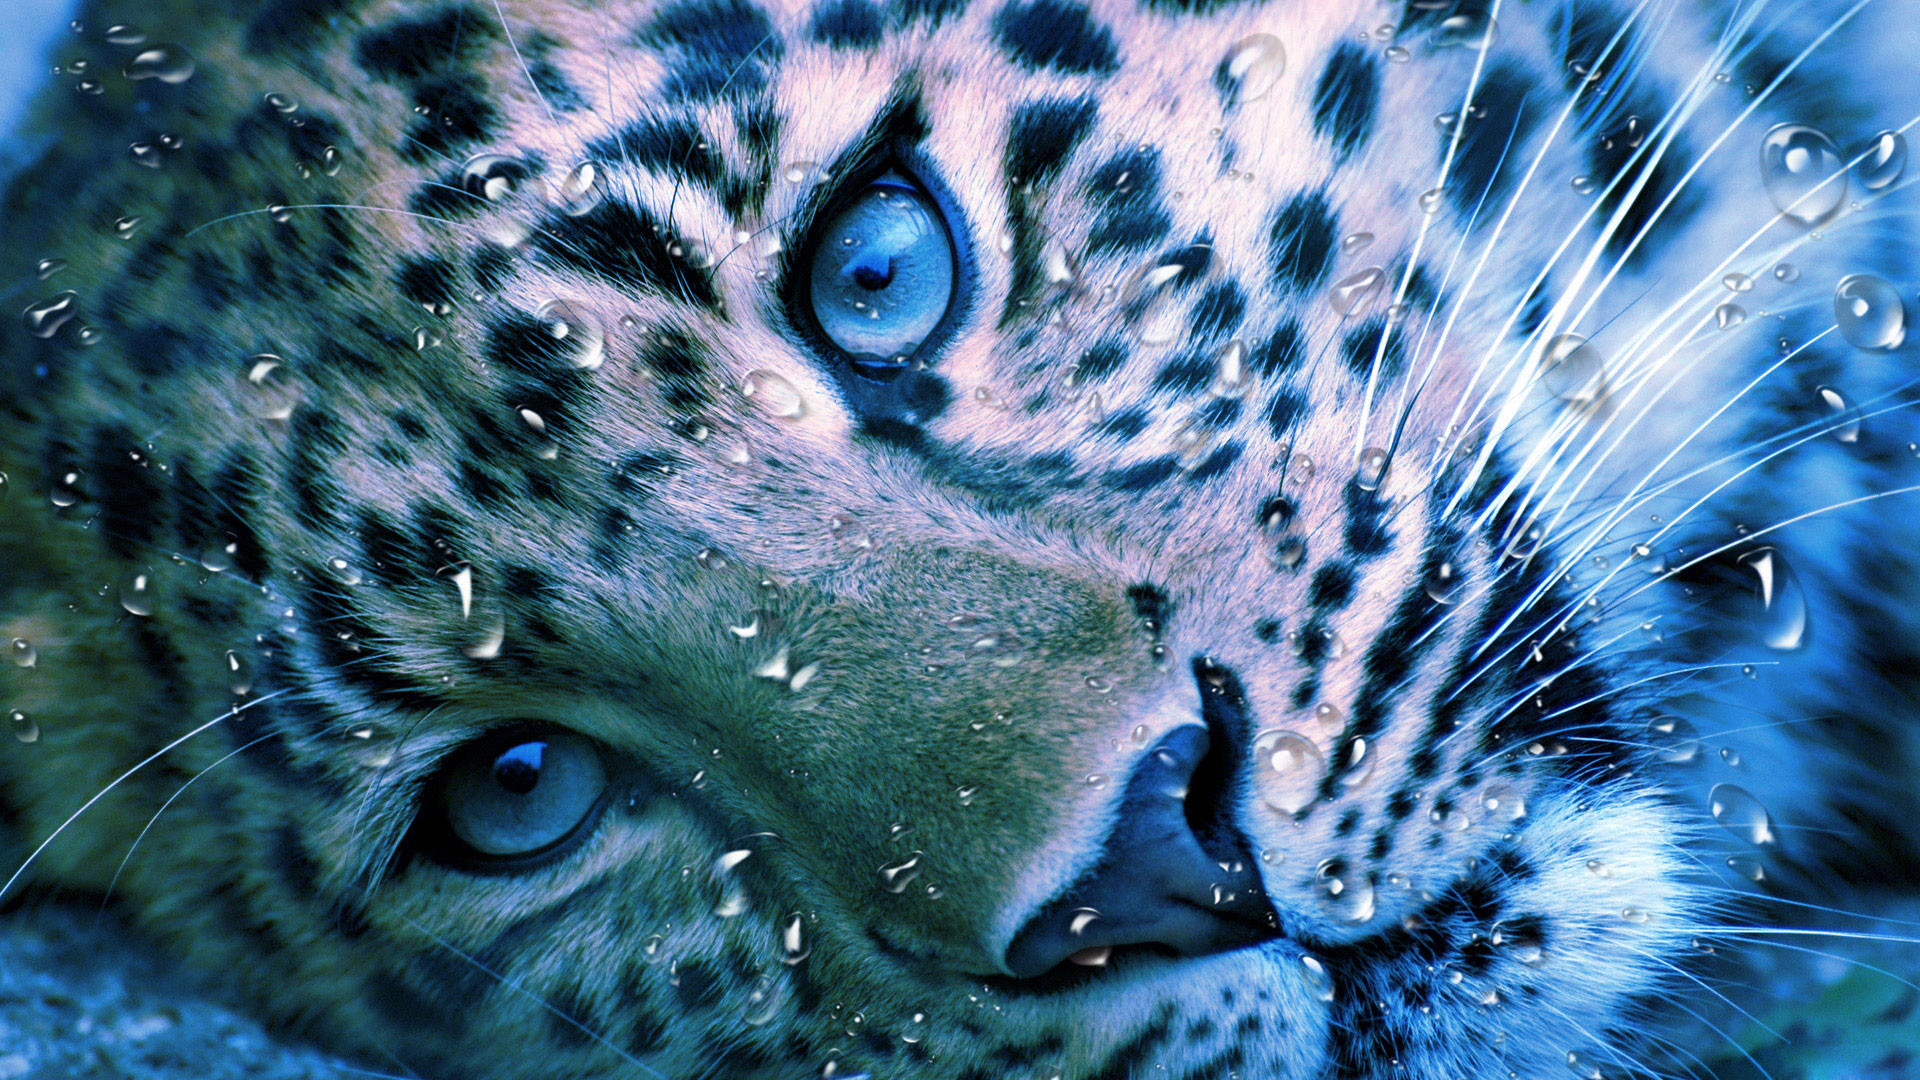 1920x1080 hd pics photos animals tiger water drops desktop background wallpaper